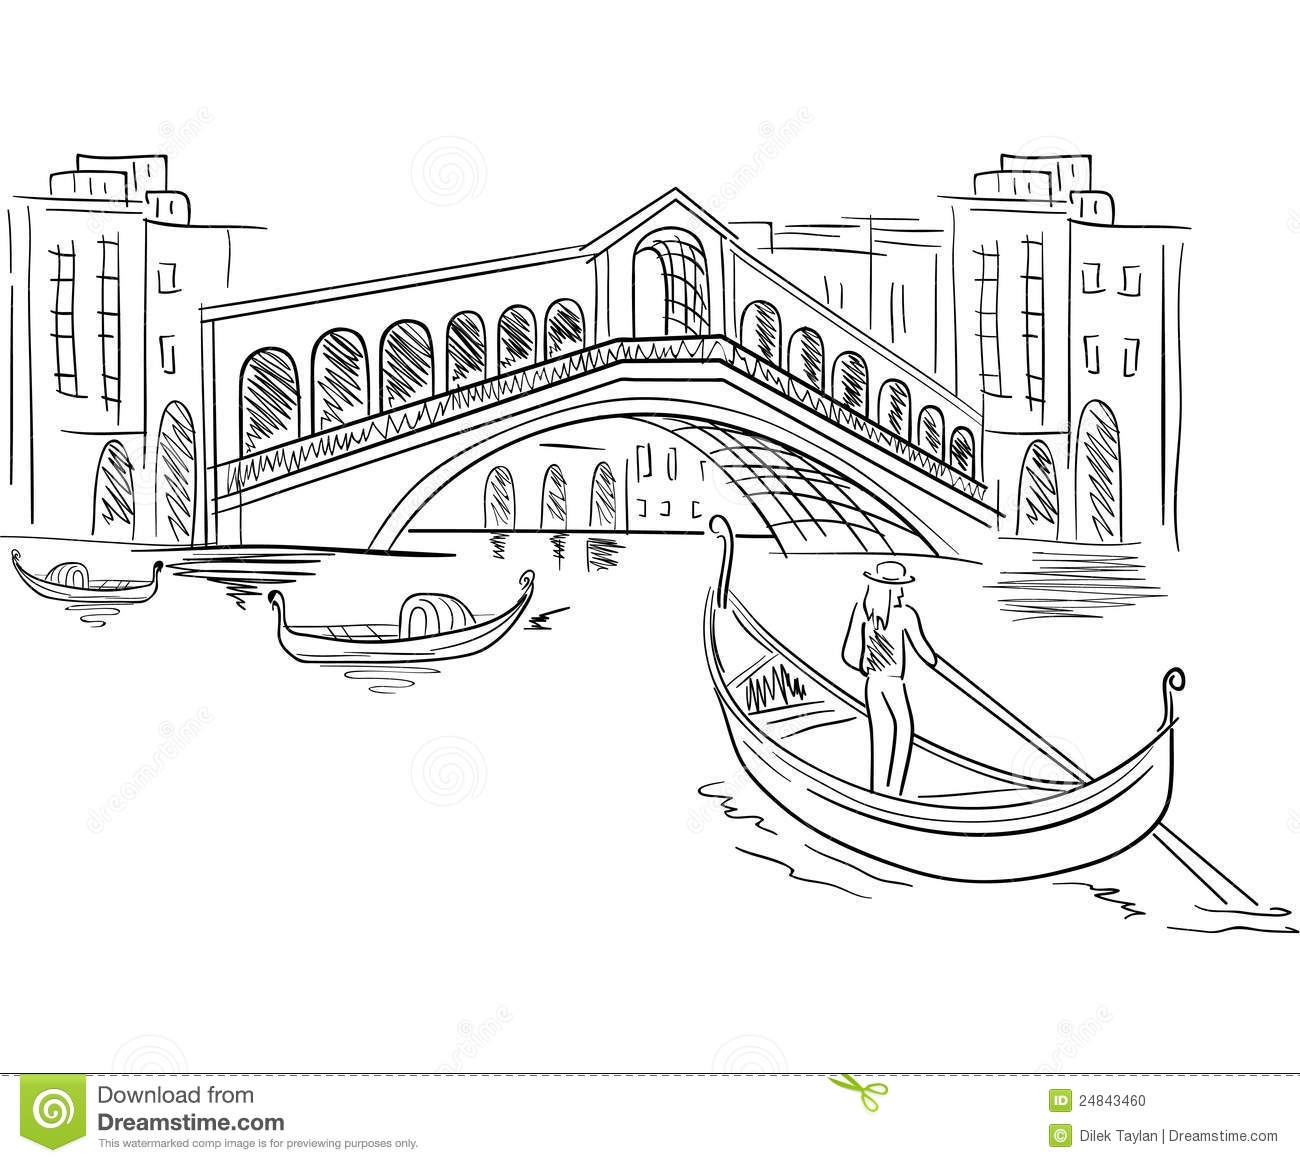 Уголок Венеции с домами каналами и гондолами